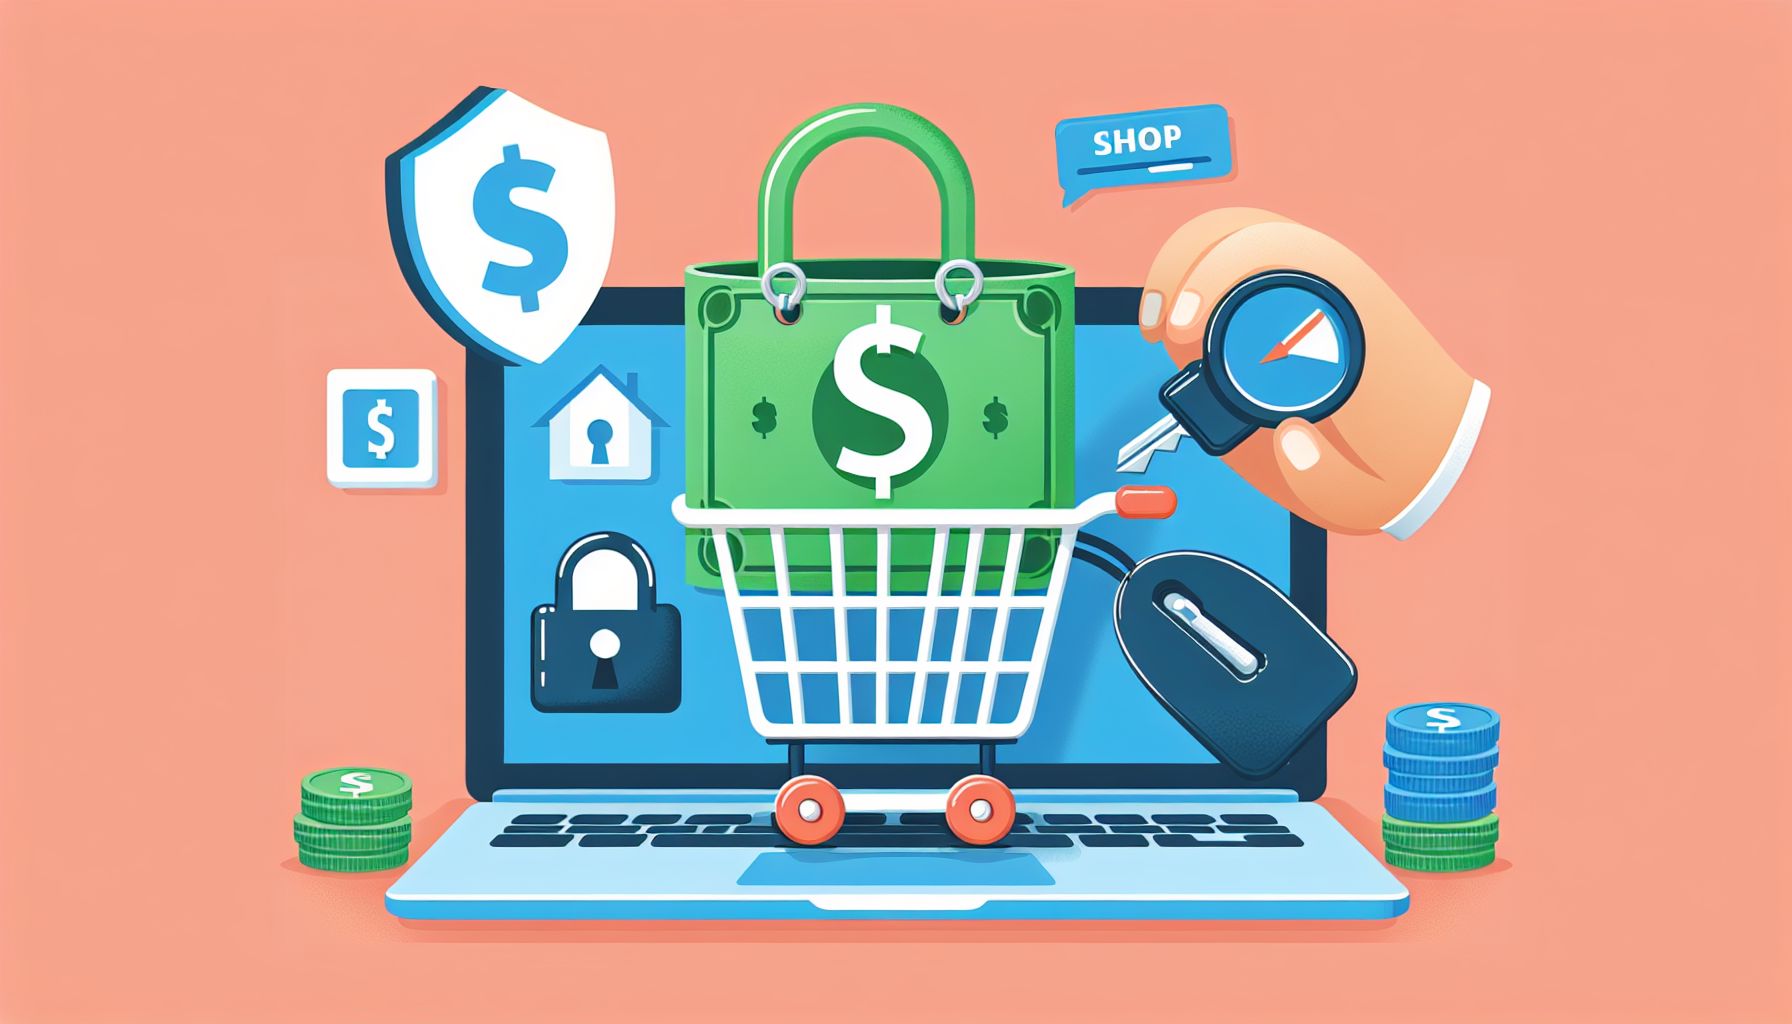 Web-alennukset: Säästä rahaa ostamalla verkosta